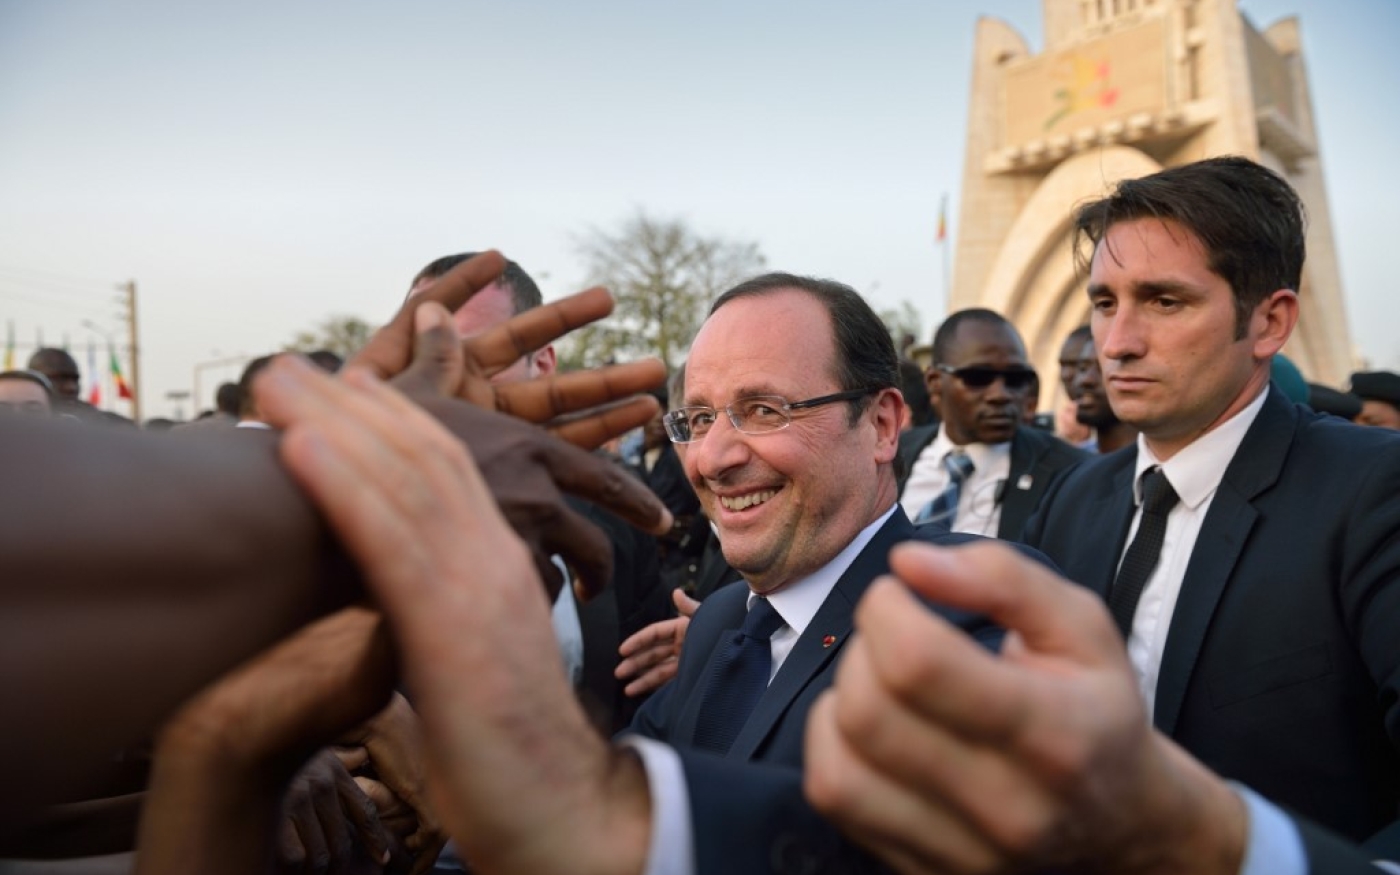 Bain de foule à Bamako pour François Hollande, alors président de la République, à Bamako, le 2 février 2013 (AFP)